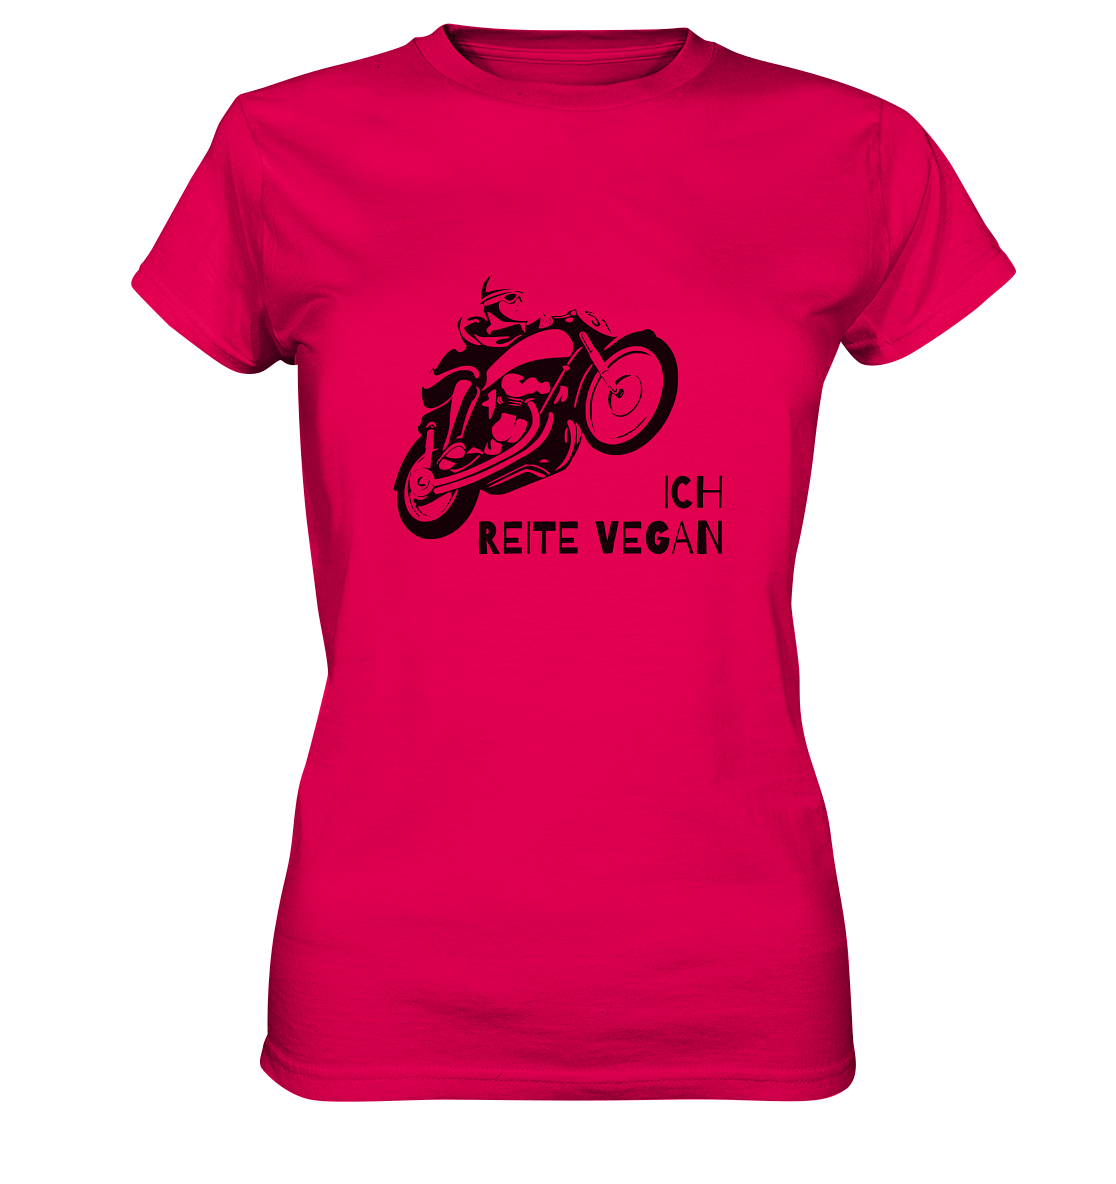 "Ich reite vegan" | Damen-Shirt mit Motorrad-Spruch in dunklem Design